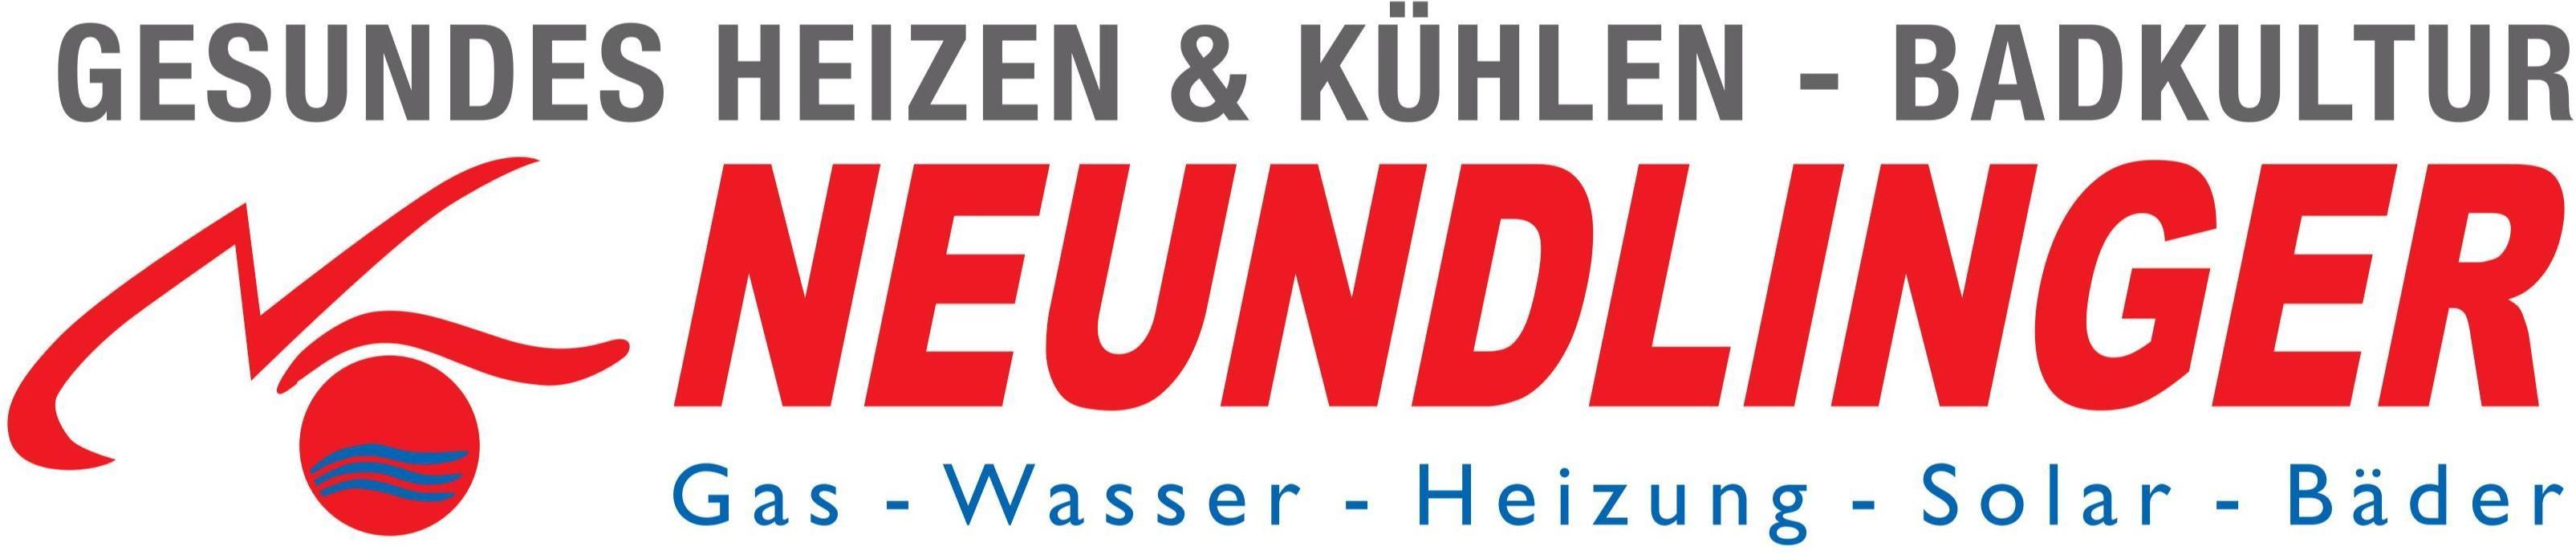 Logo Neundlinger Haustechnik e.U. Gas-Wasser-Heizung-Solar-Bäder